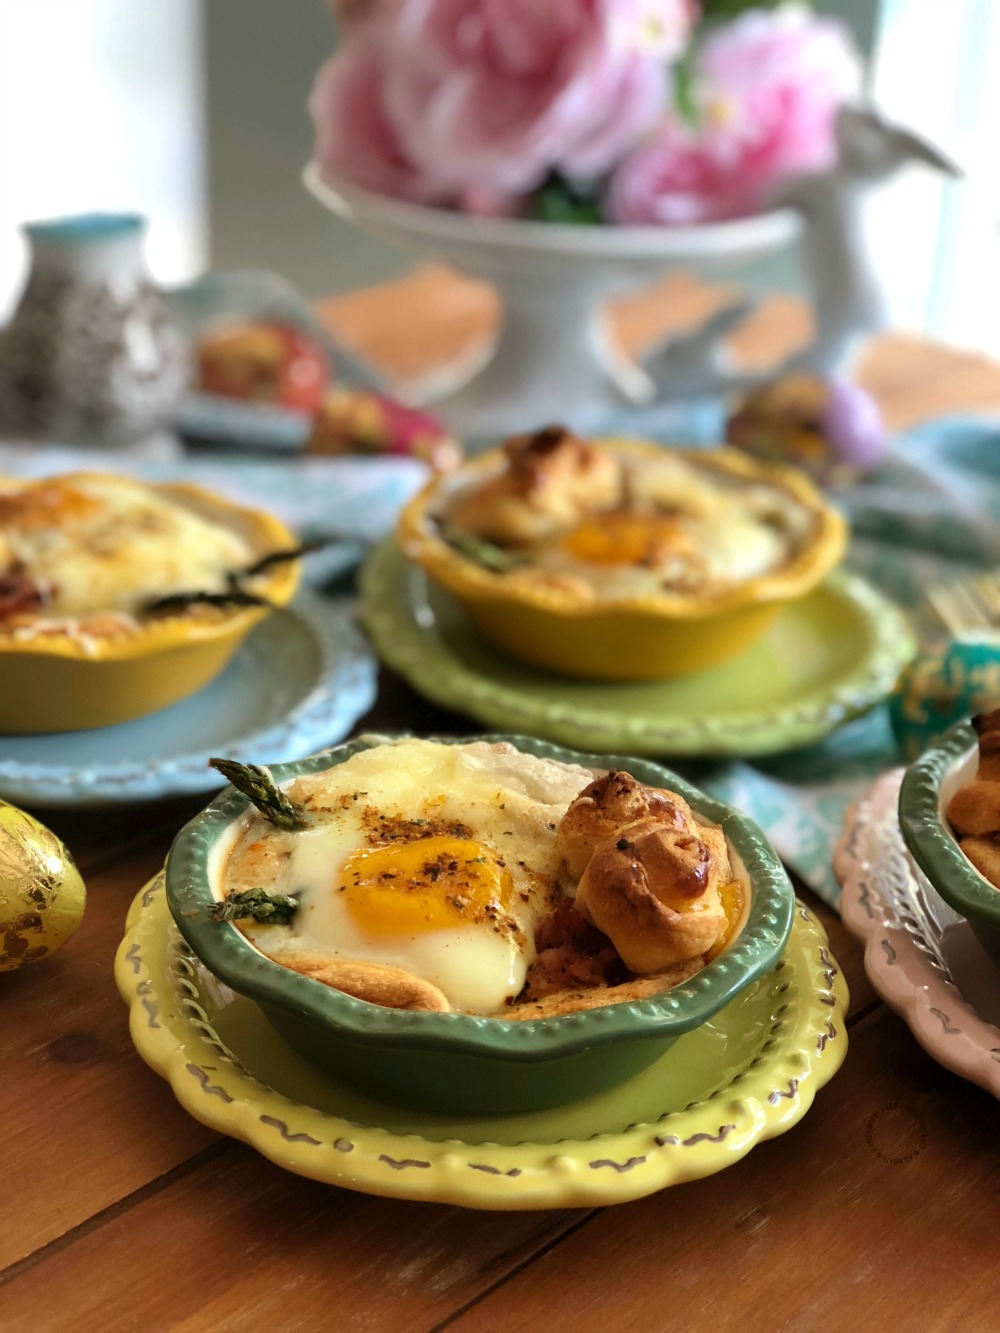 Los mini pays de huevo con espárragos son perfectos para el menú de la Pascua